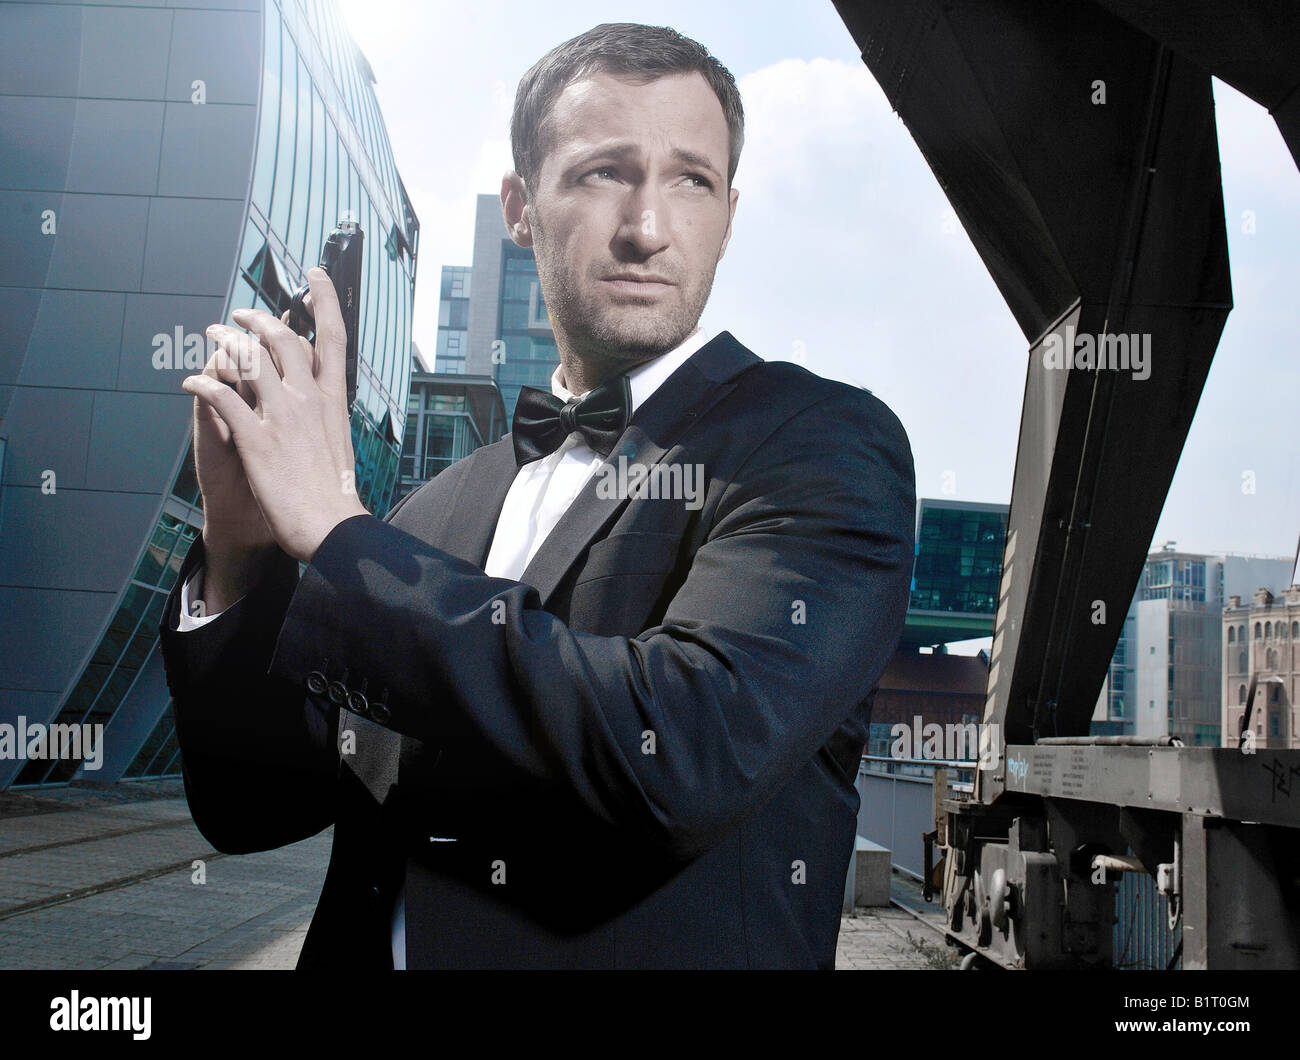 31-year-old man déguisé en James Bond dans le port de Düsseldorf, Rhénanie du Nord-Westphalie, Allemagne, Europe Banque D'Images